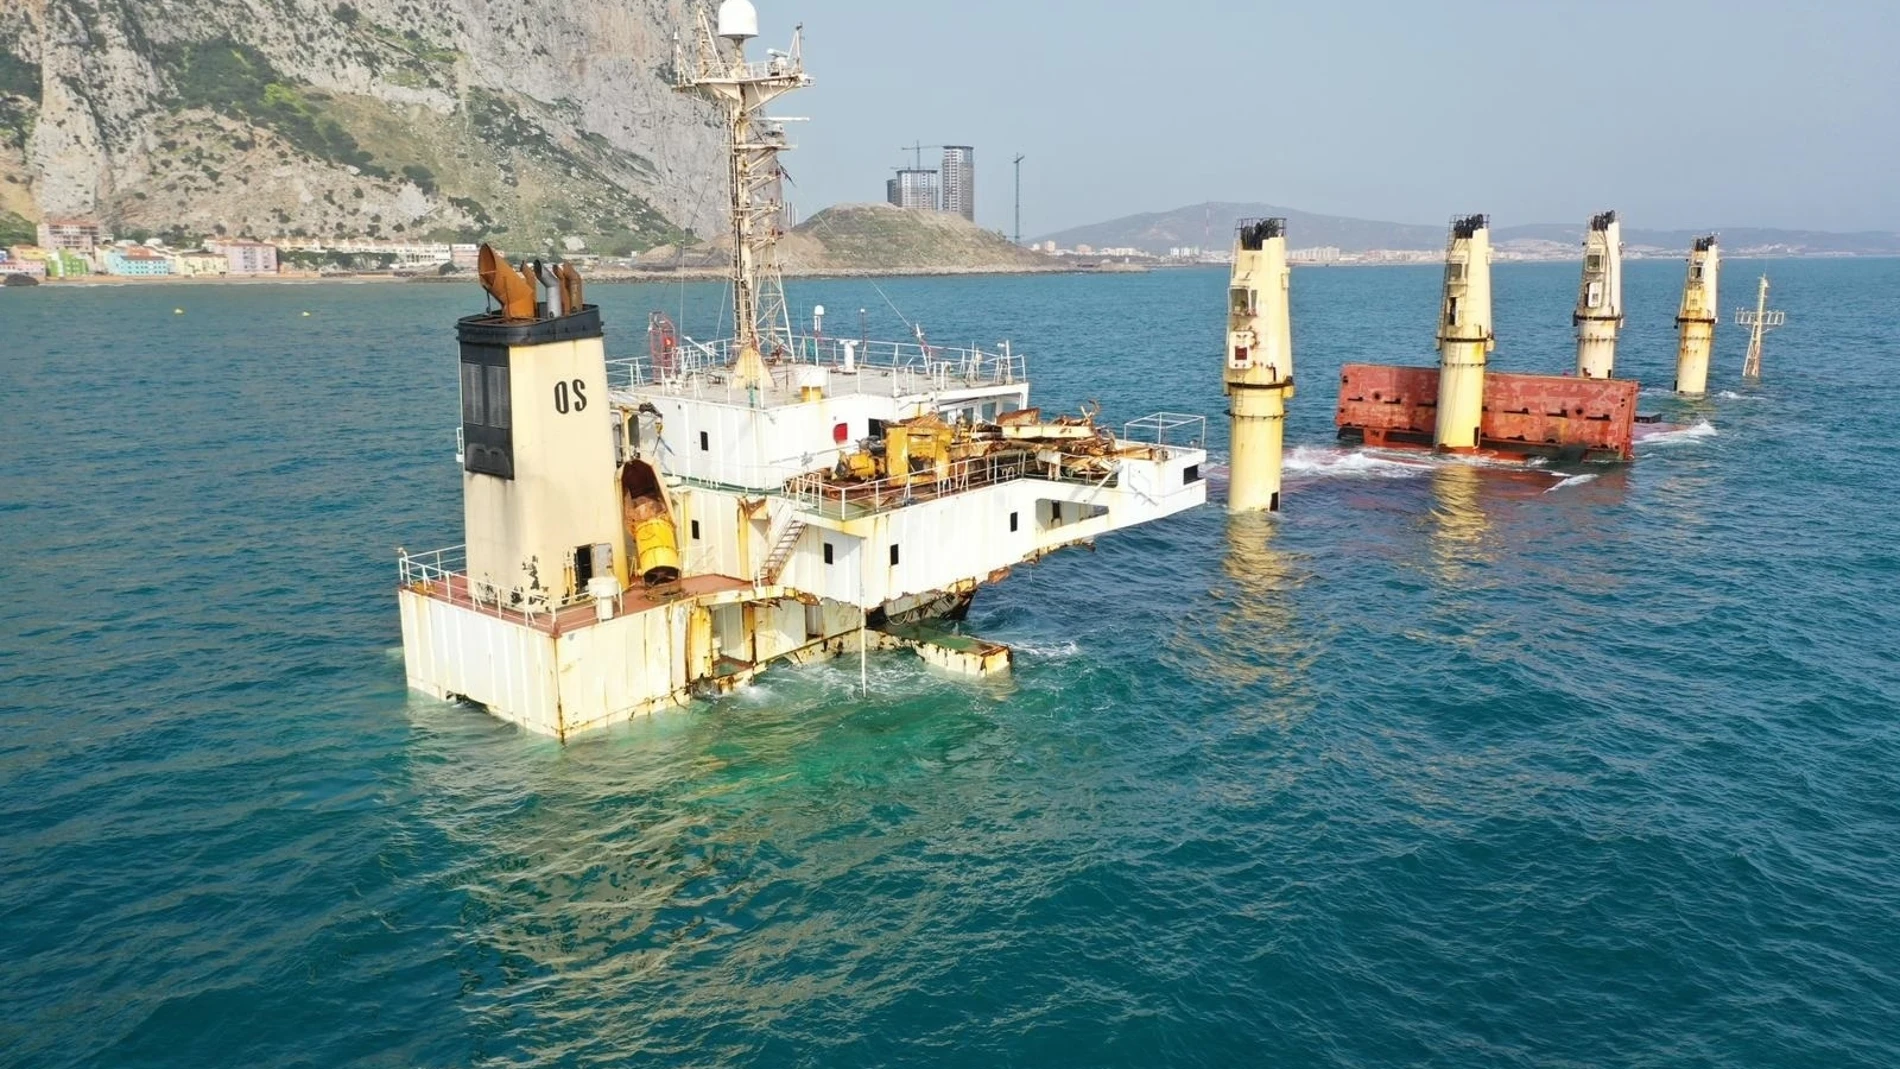 El buque OS 35 hundido frente a Gibraltar